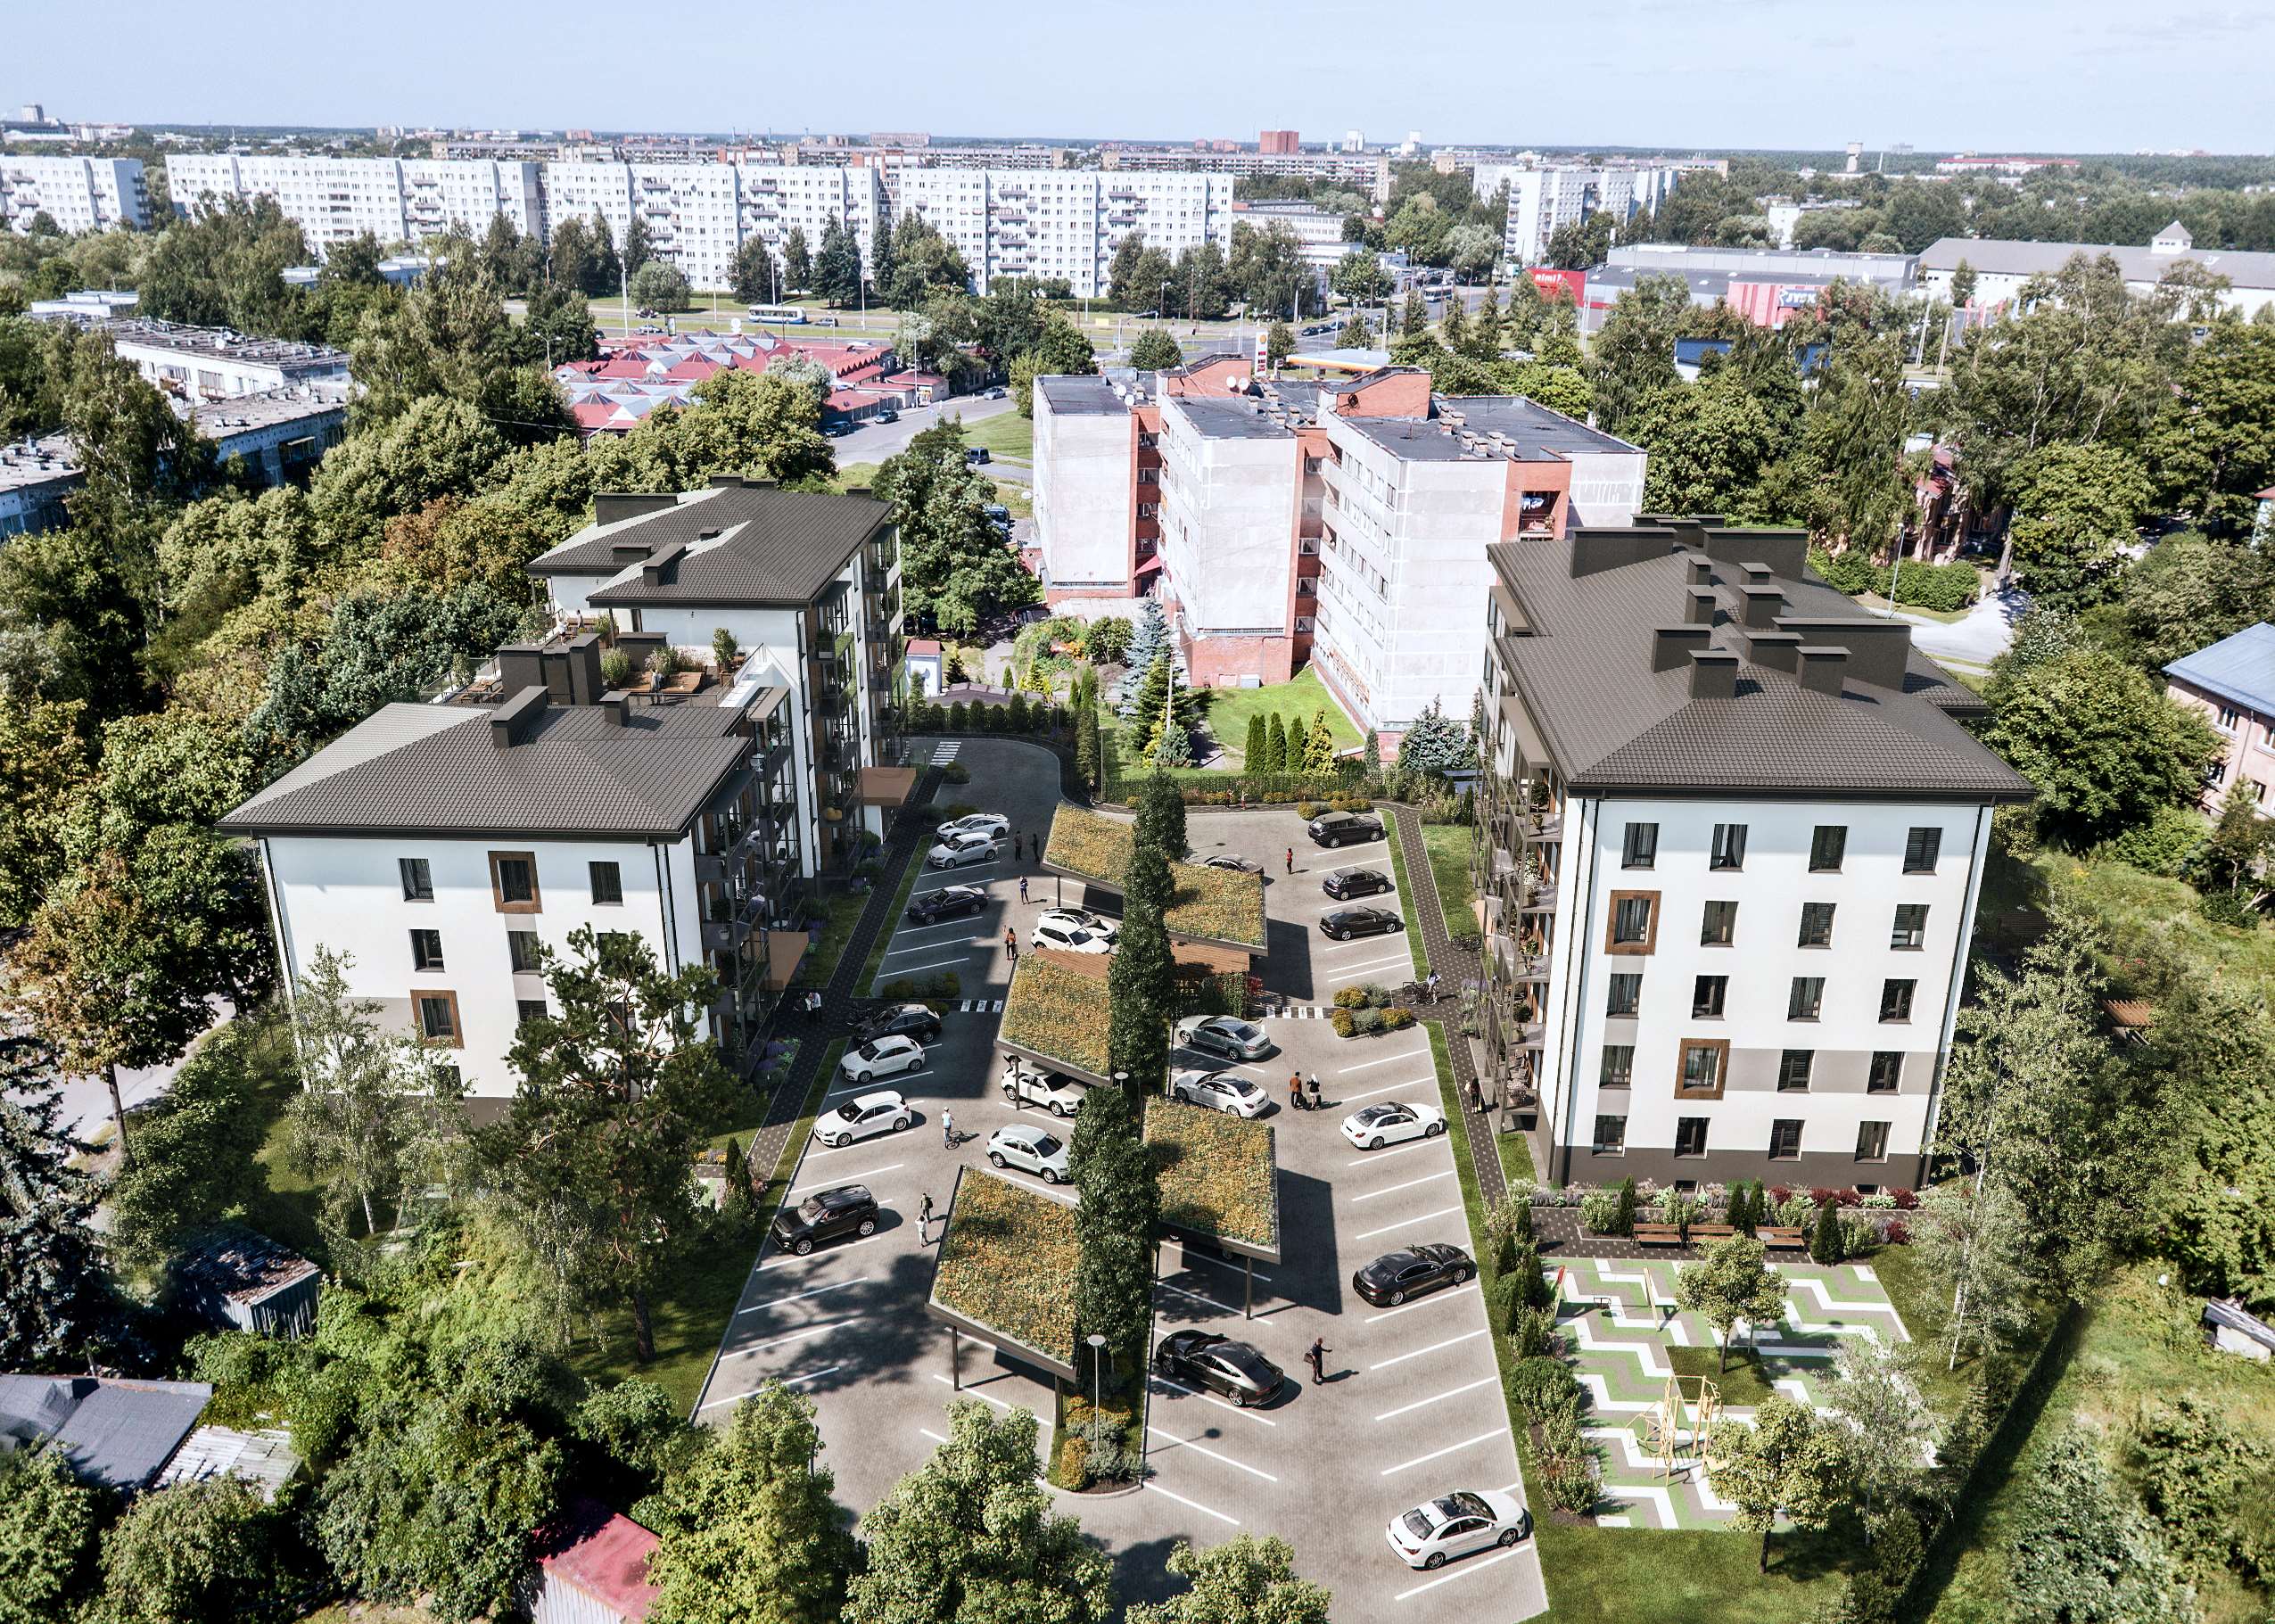 Ekspluatācijā nodots daudzdzīvokļu namu projekts Purvciemā “Hausmaņa terases” - Nekustamo īpašumu ziņas - City24.lv nekustamo īpašumu sludinājumu portāls